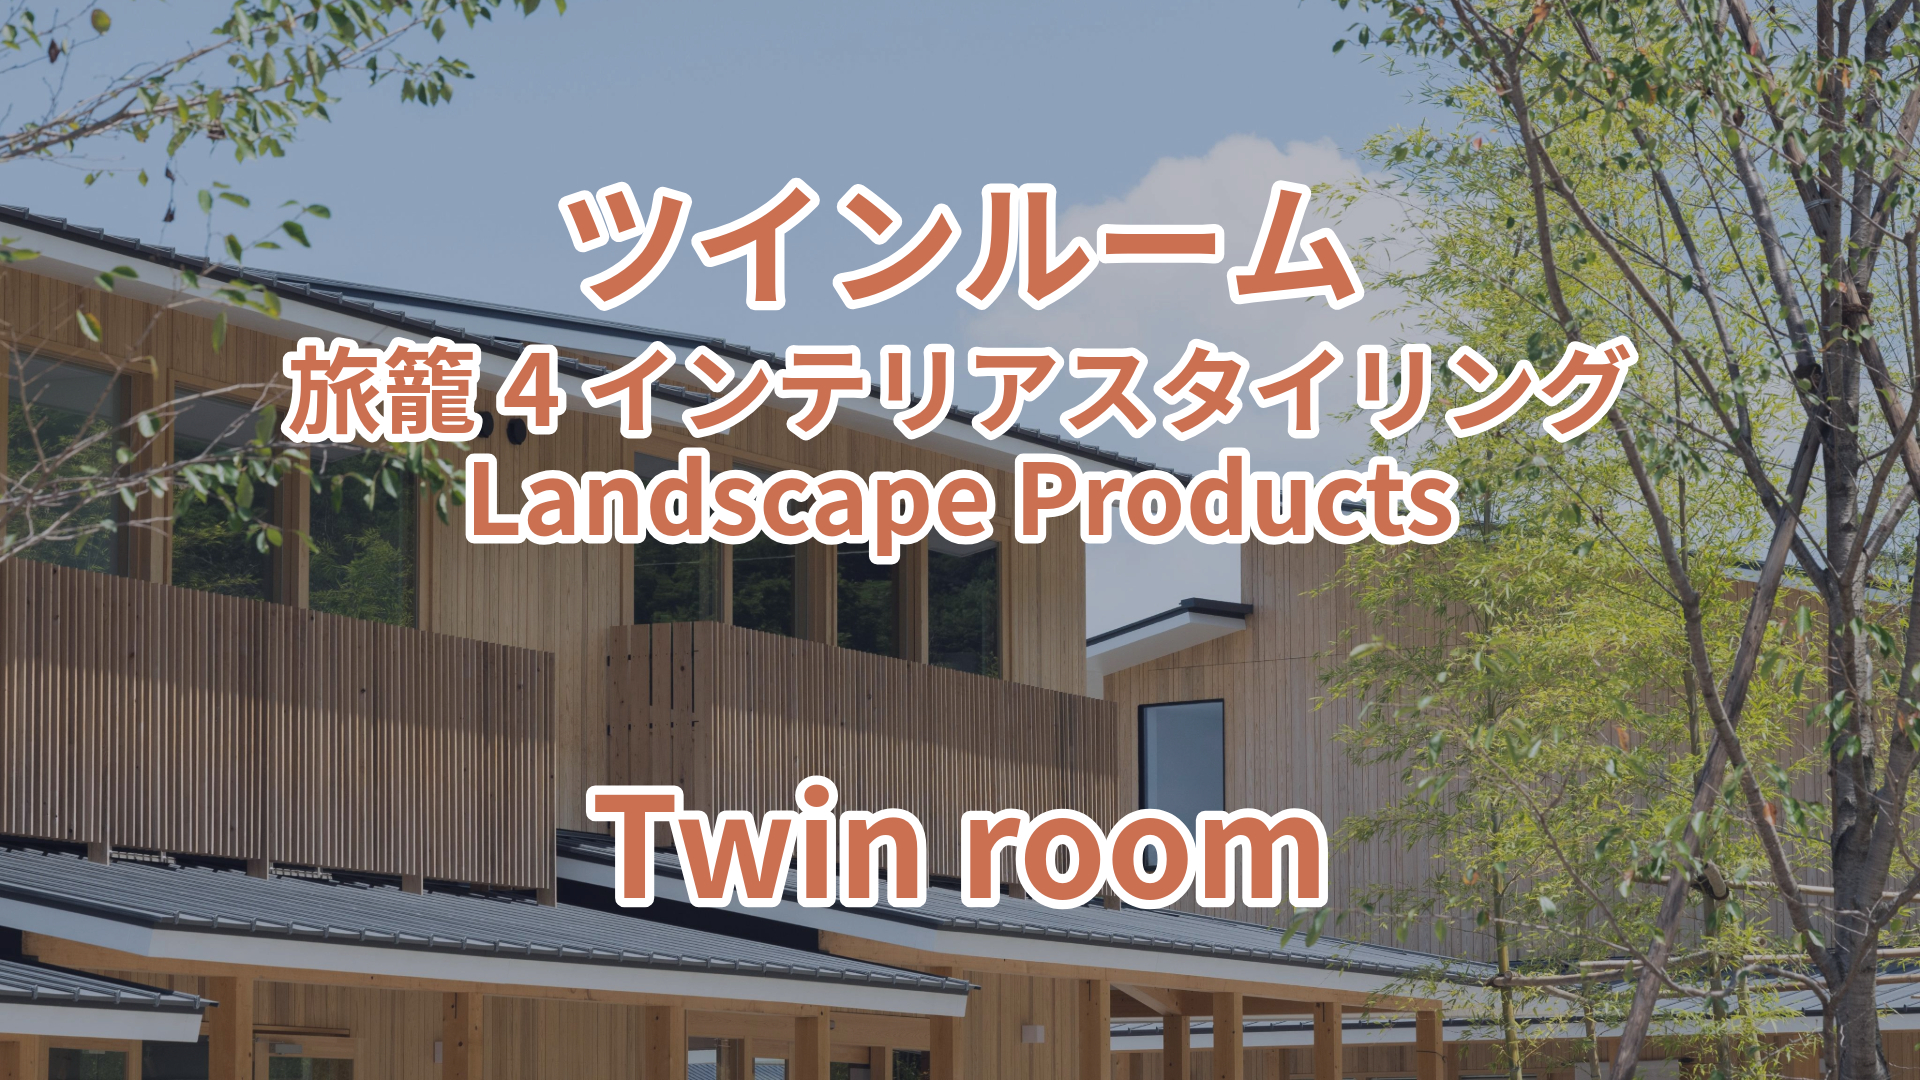 ツインルーム 旅籠4 インテリアスタイリング Landscape Products